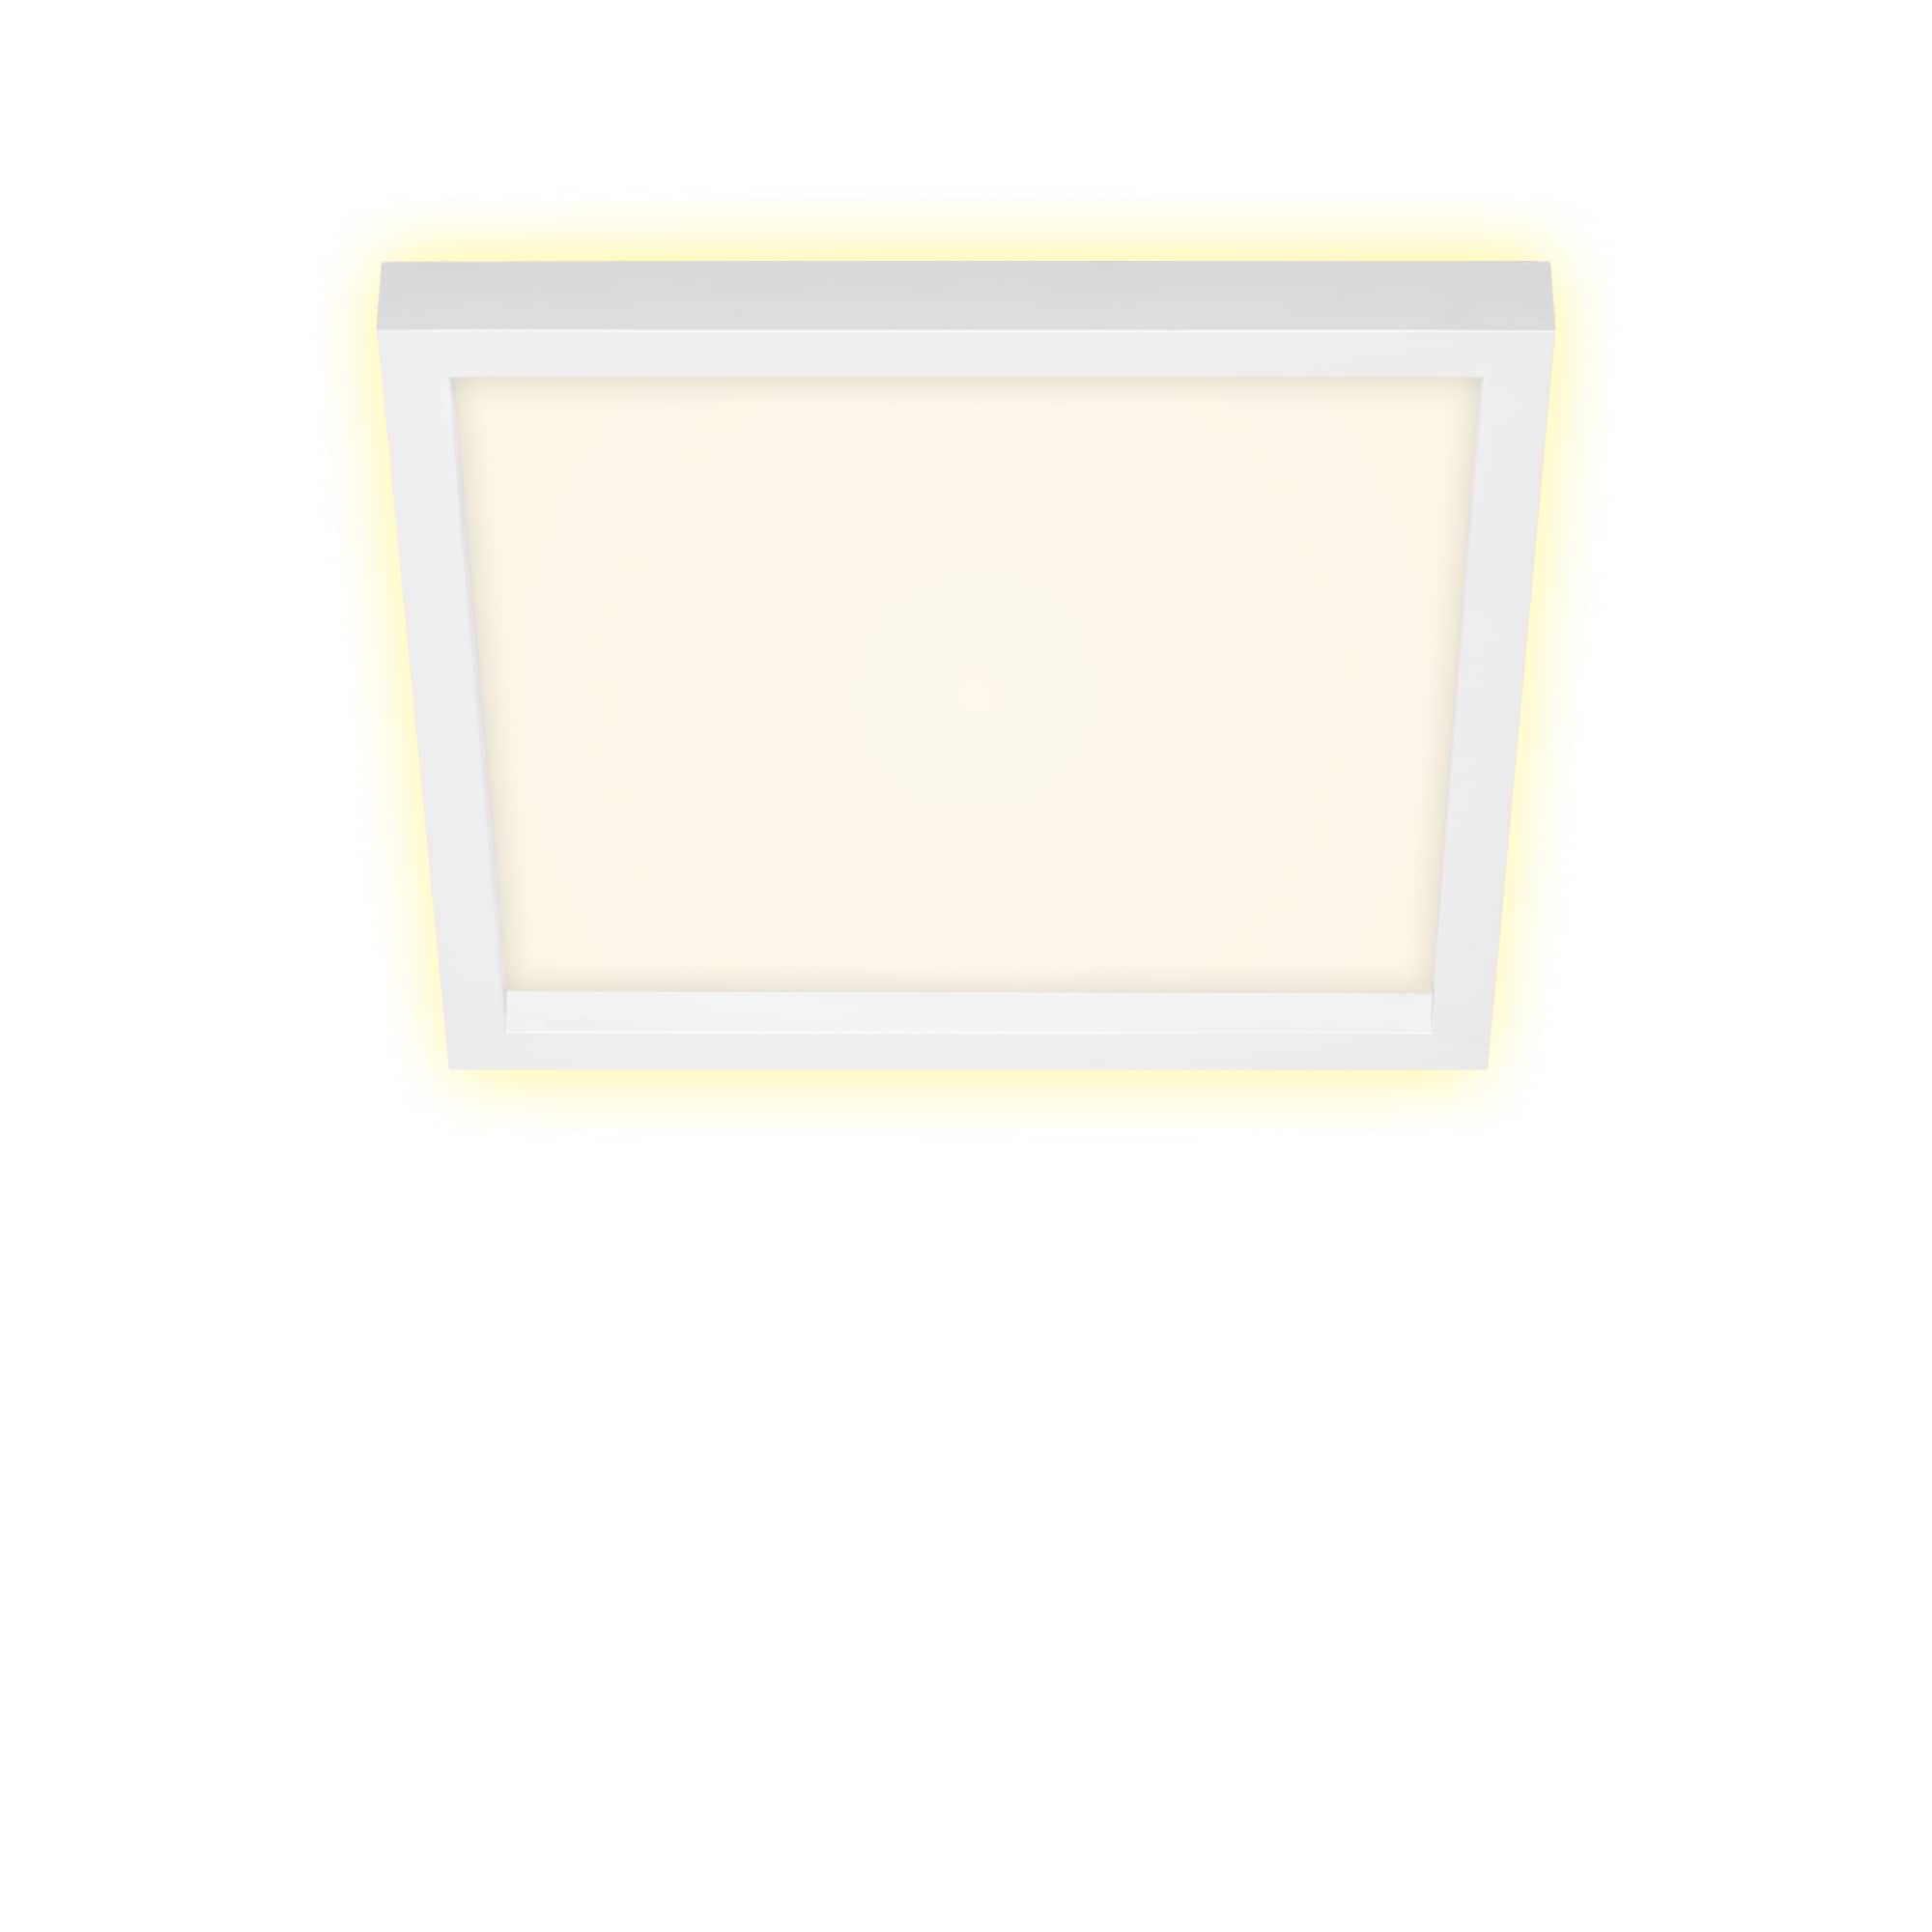 LED Ceiling light 29,3 cm 18W 2400lm white